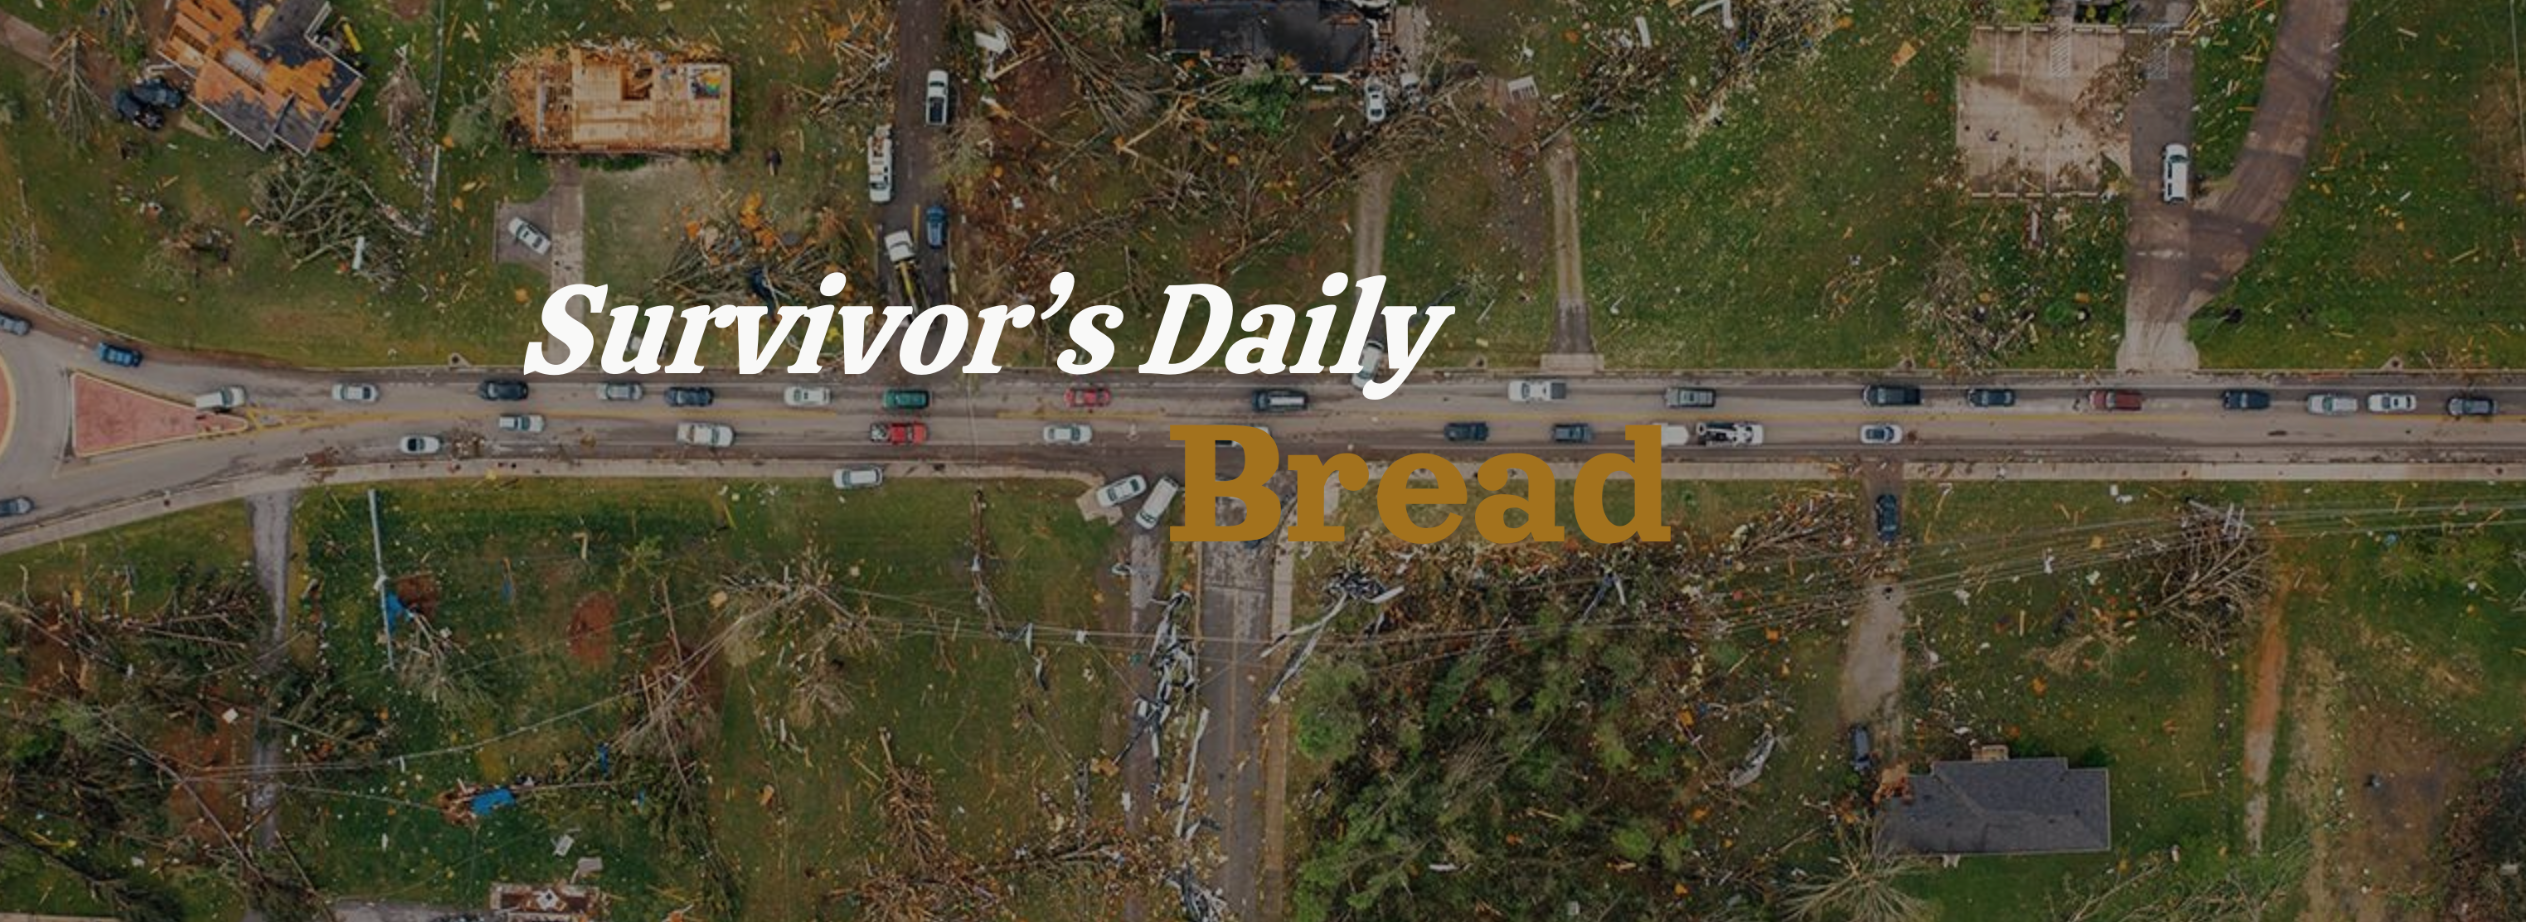 Survivors Daily Bread Campaign